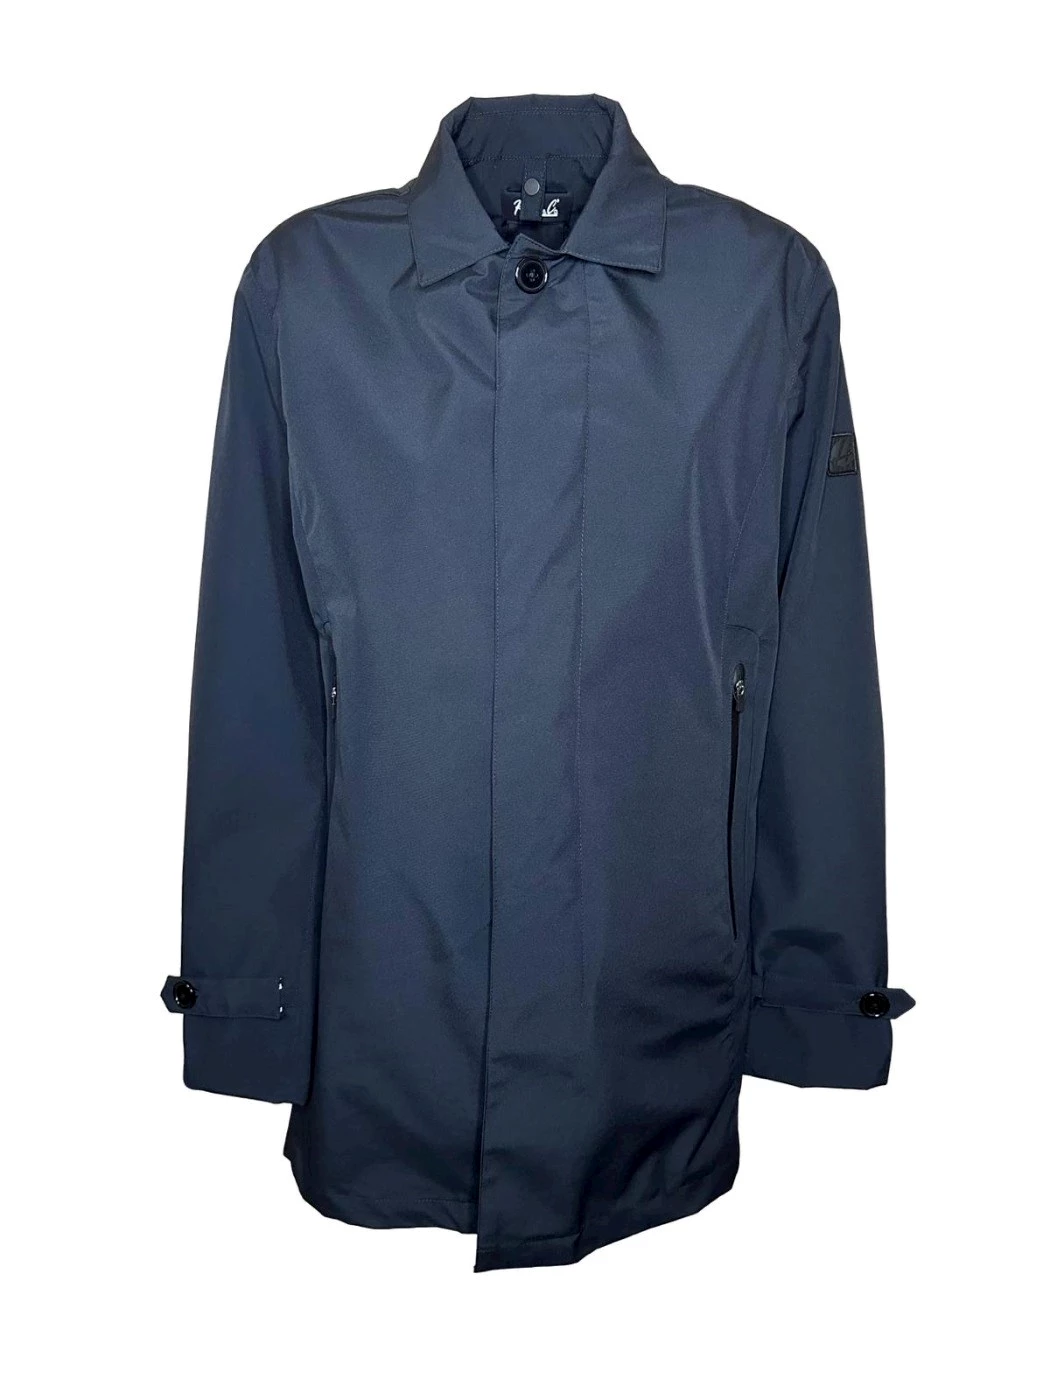 Happer&Co trench coat jacket